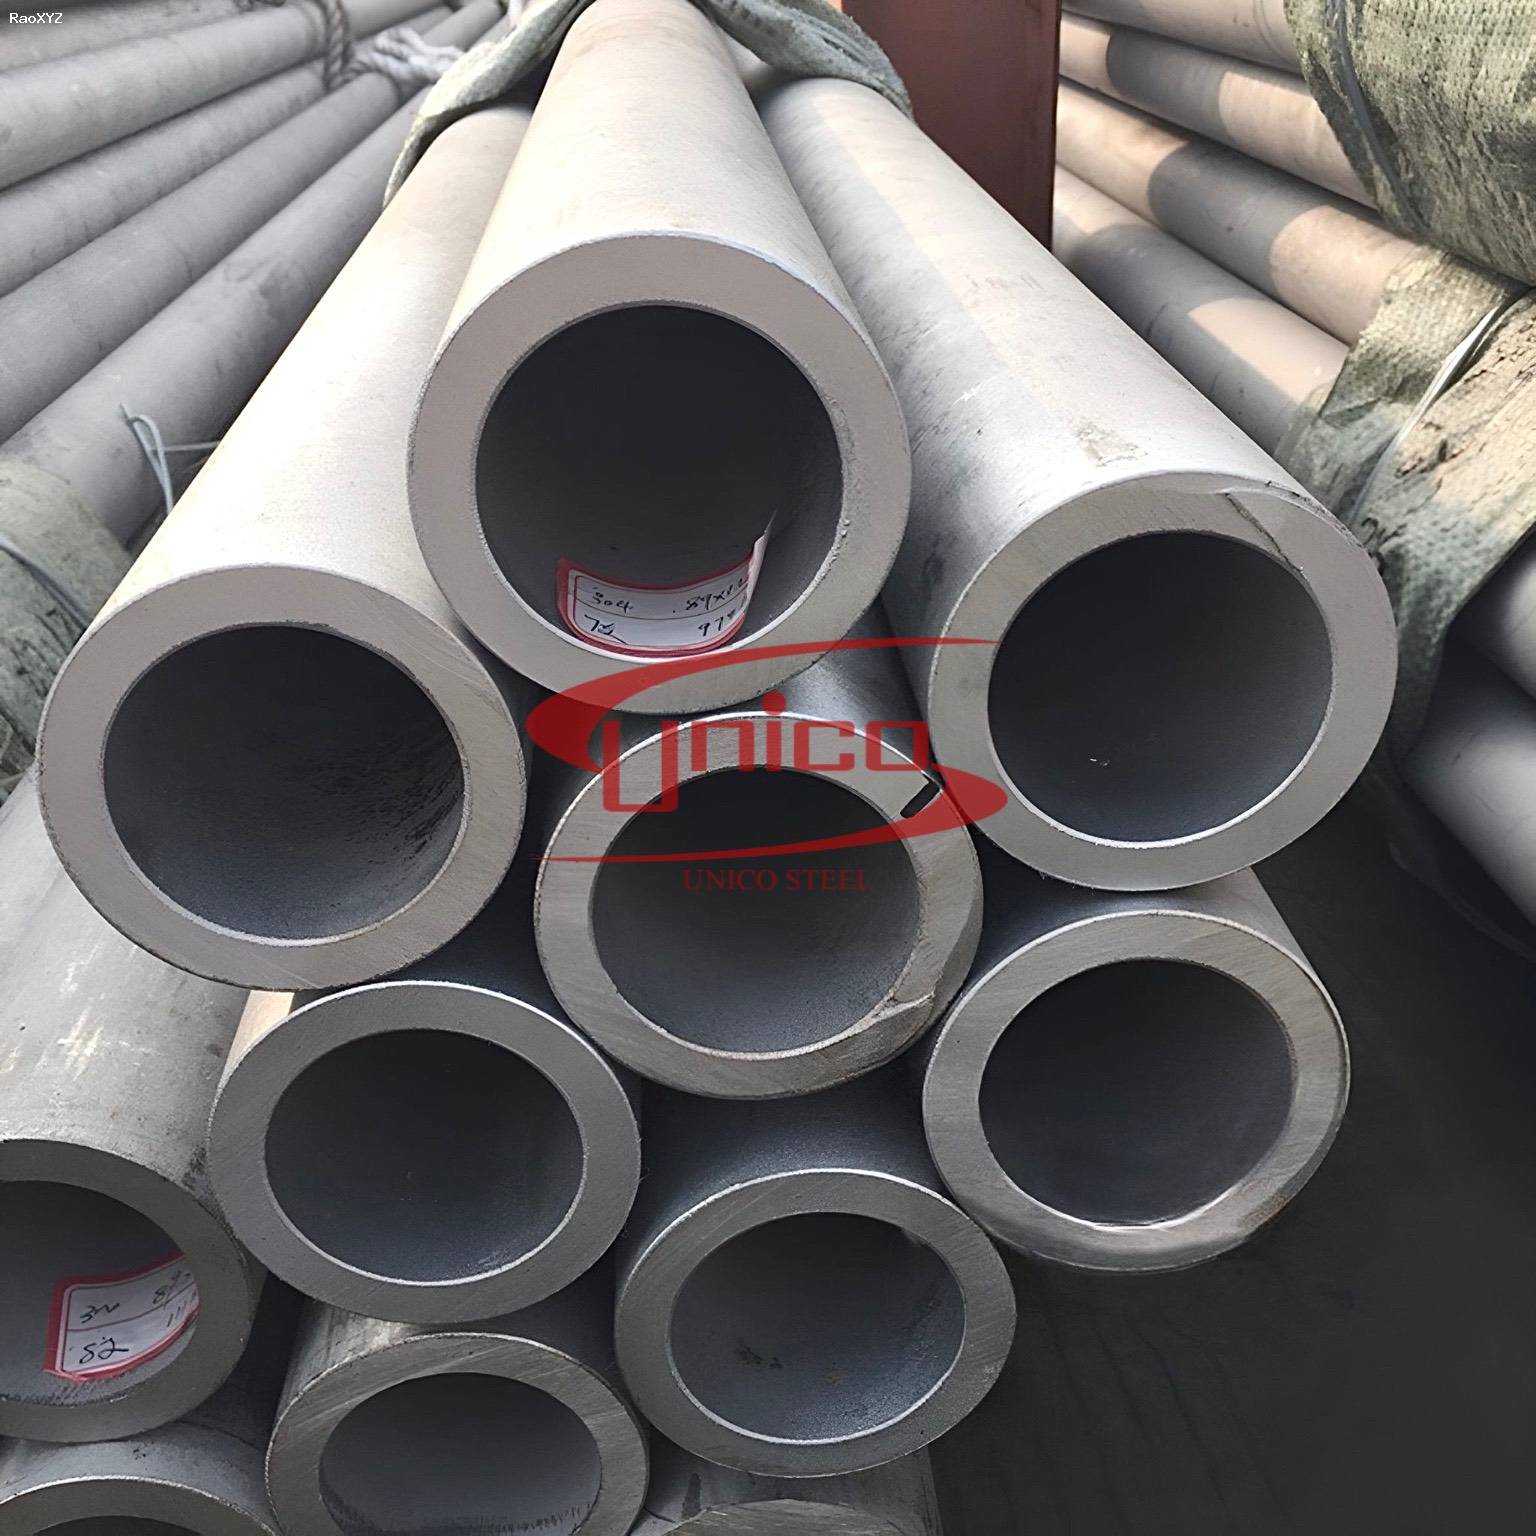 Unico steel chuyên thép ống inox 904/904L/SUS904L